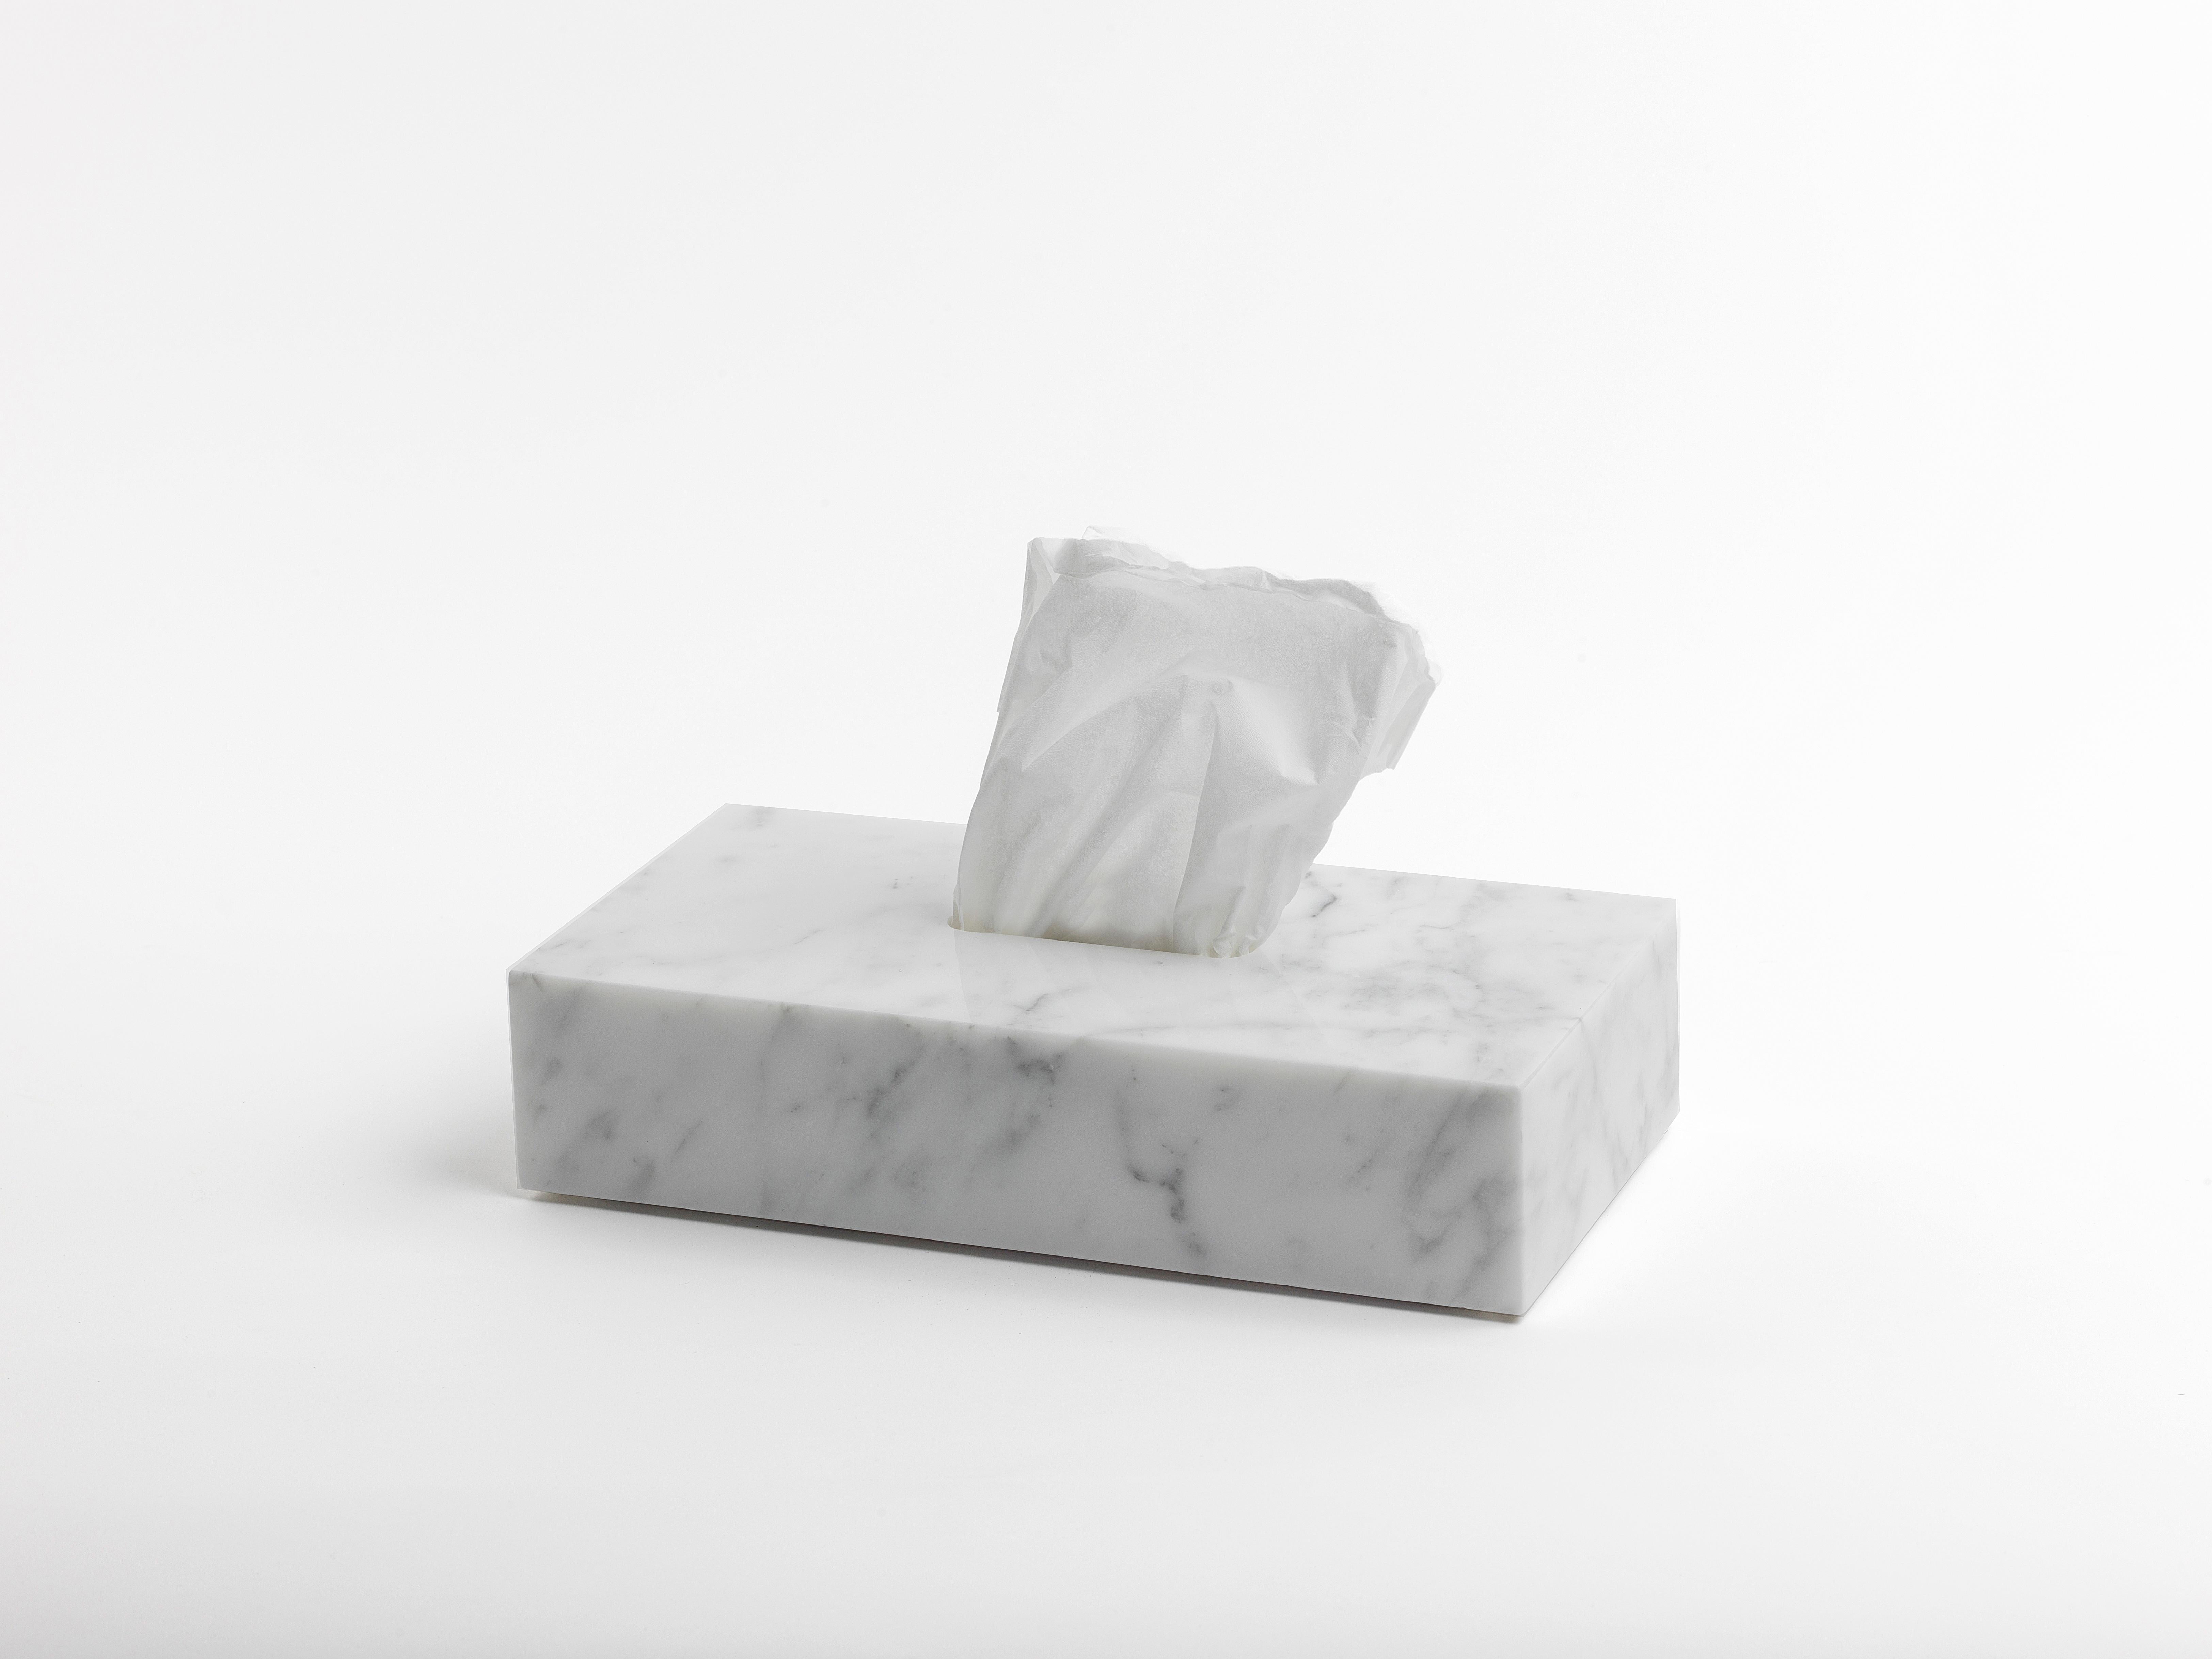 Rechteckige Taschentuchschachtel aus weißem Carrara-Marmor.
Jedes Stück ist in gewisser Weise einzigartig (da jeder Marmorblock unterschiedliche Maserungen und Schattierungen aufweist) und wird in Italien handgefertigt. Geringfügige Abweichungen in